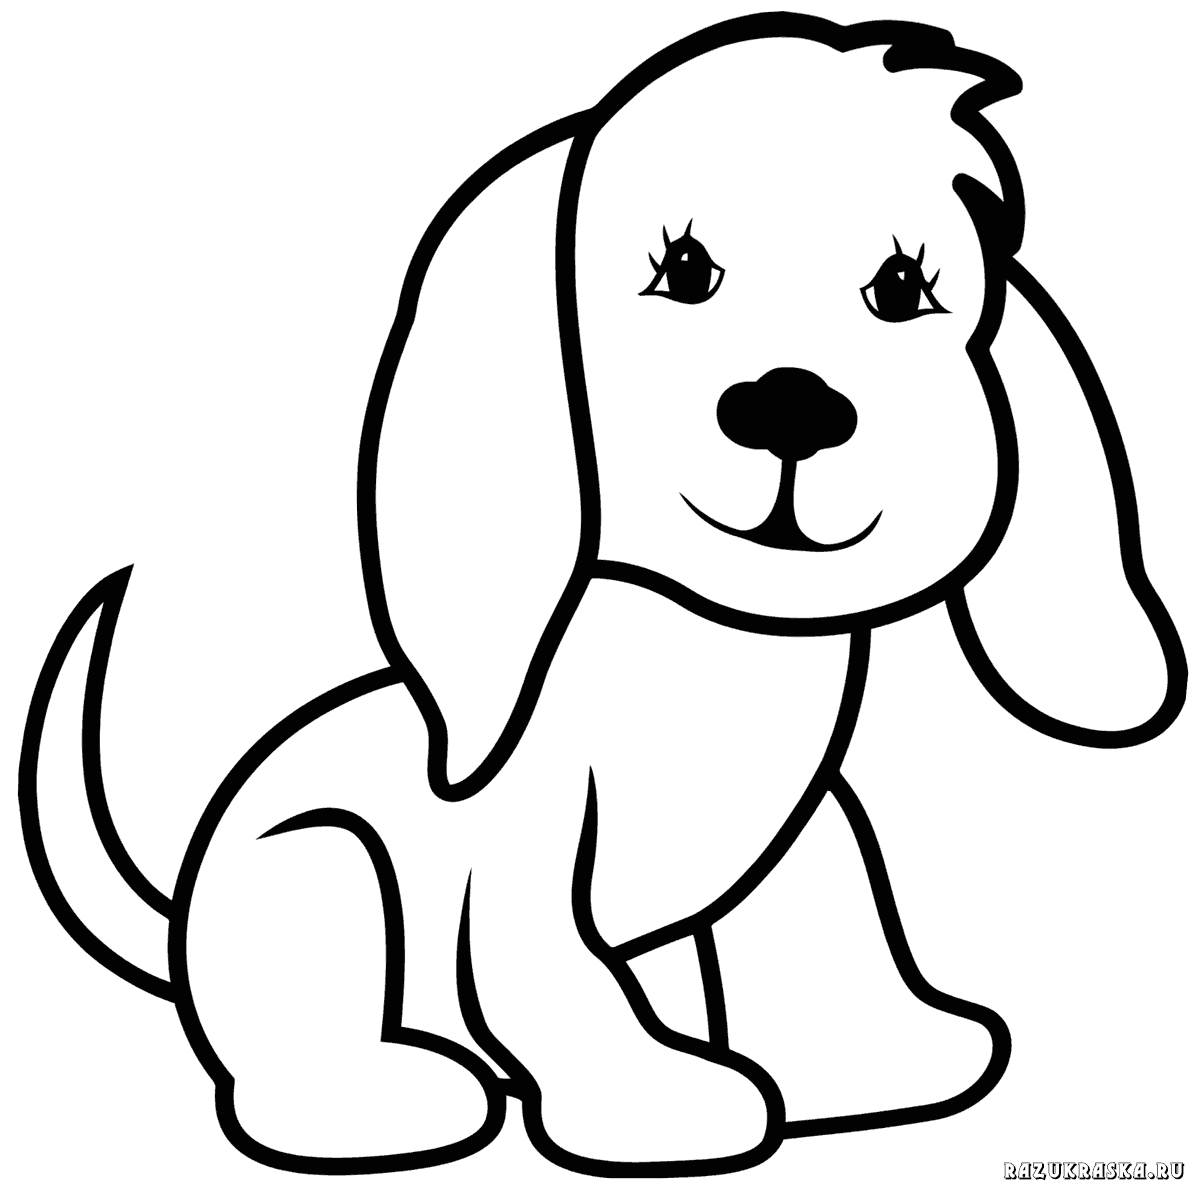 Auf Folgende Seite Finden Sie Schone Ausmalbilder Hunde Vorlagen Zum Ausdrucken Schauen Sie Mal Und Speichern Ausmalbilder Hunde Susse Tiere Zeichnen Ausmalen